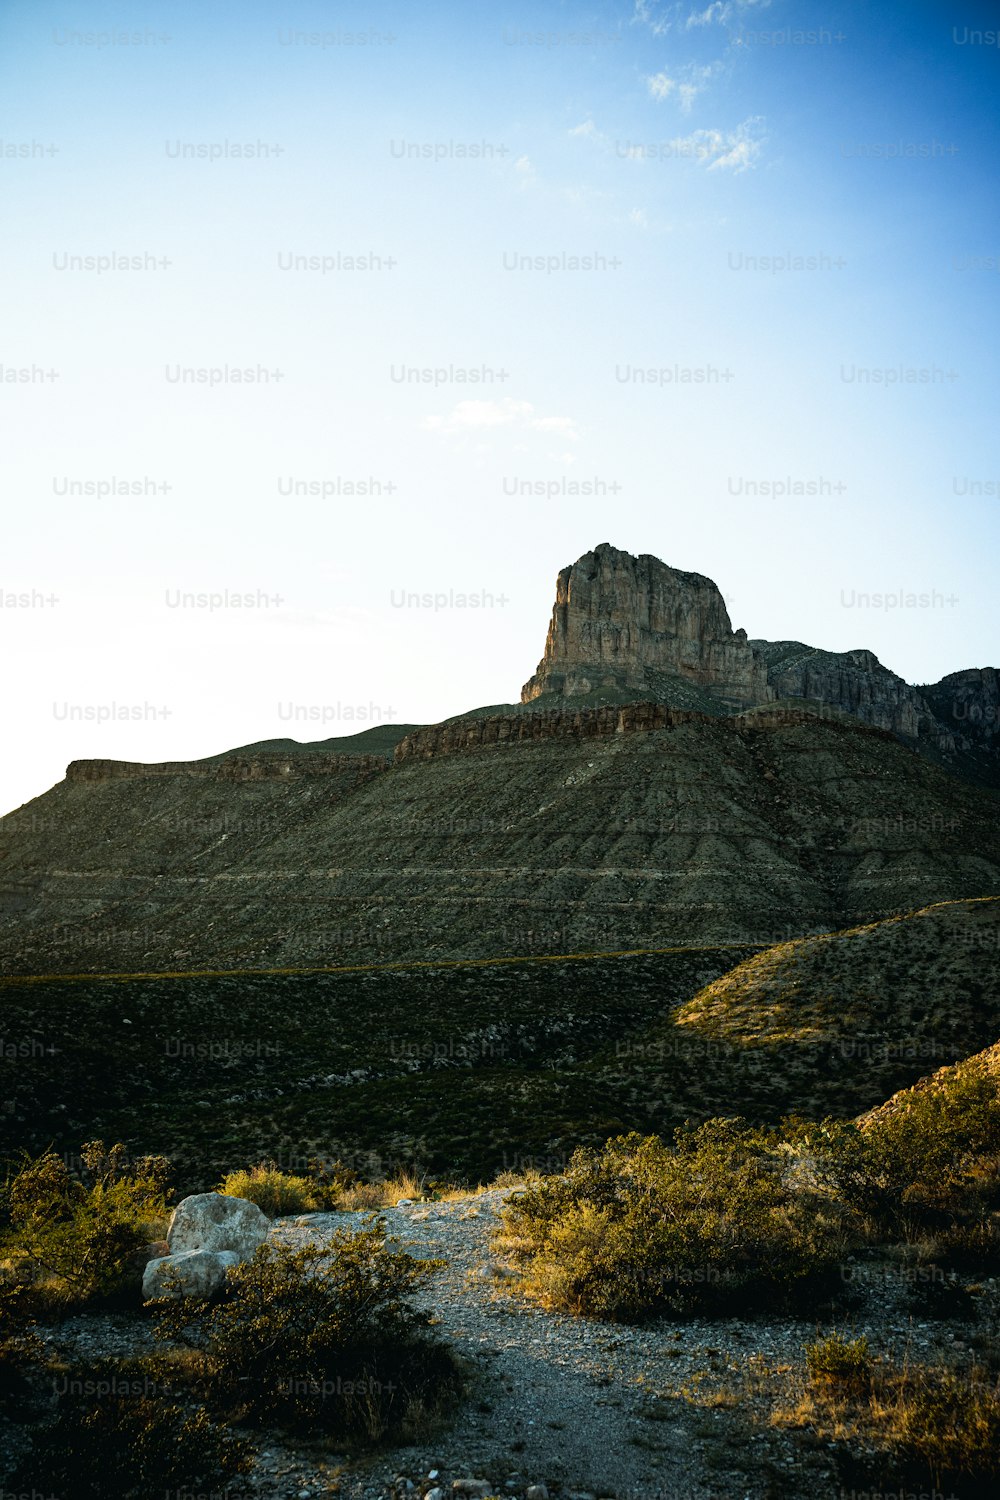 Una gran montaña con una roca muy alta en la cima